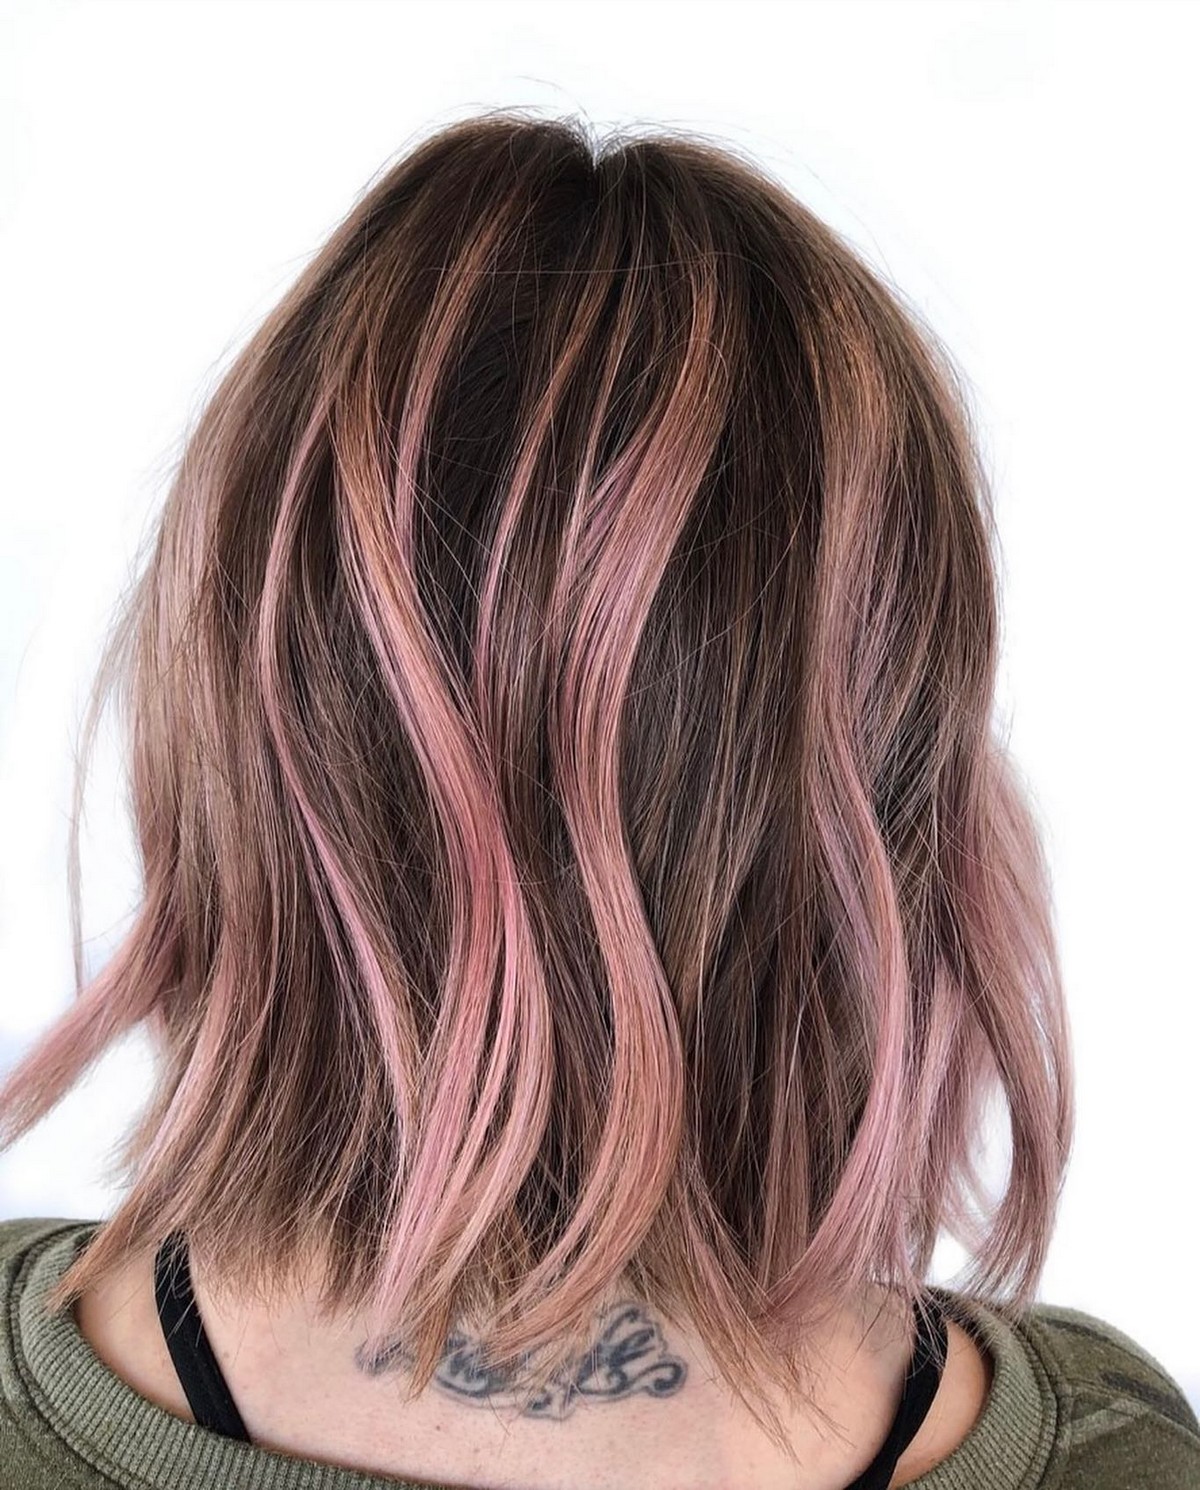 Subtle Pink Streaks in Hair